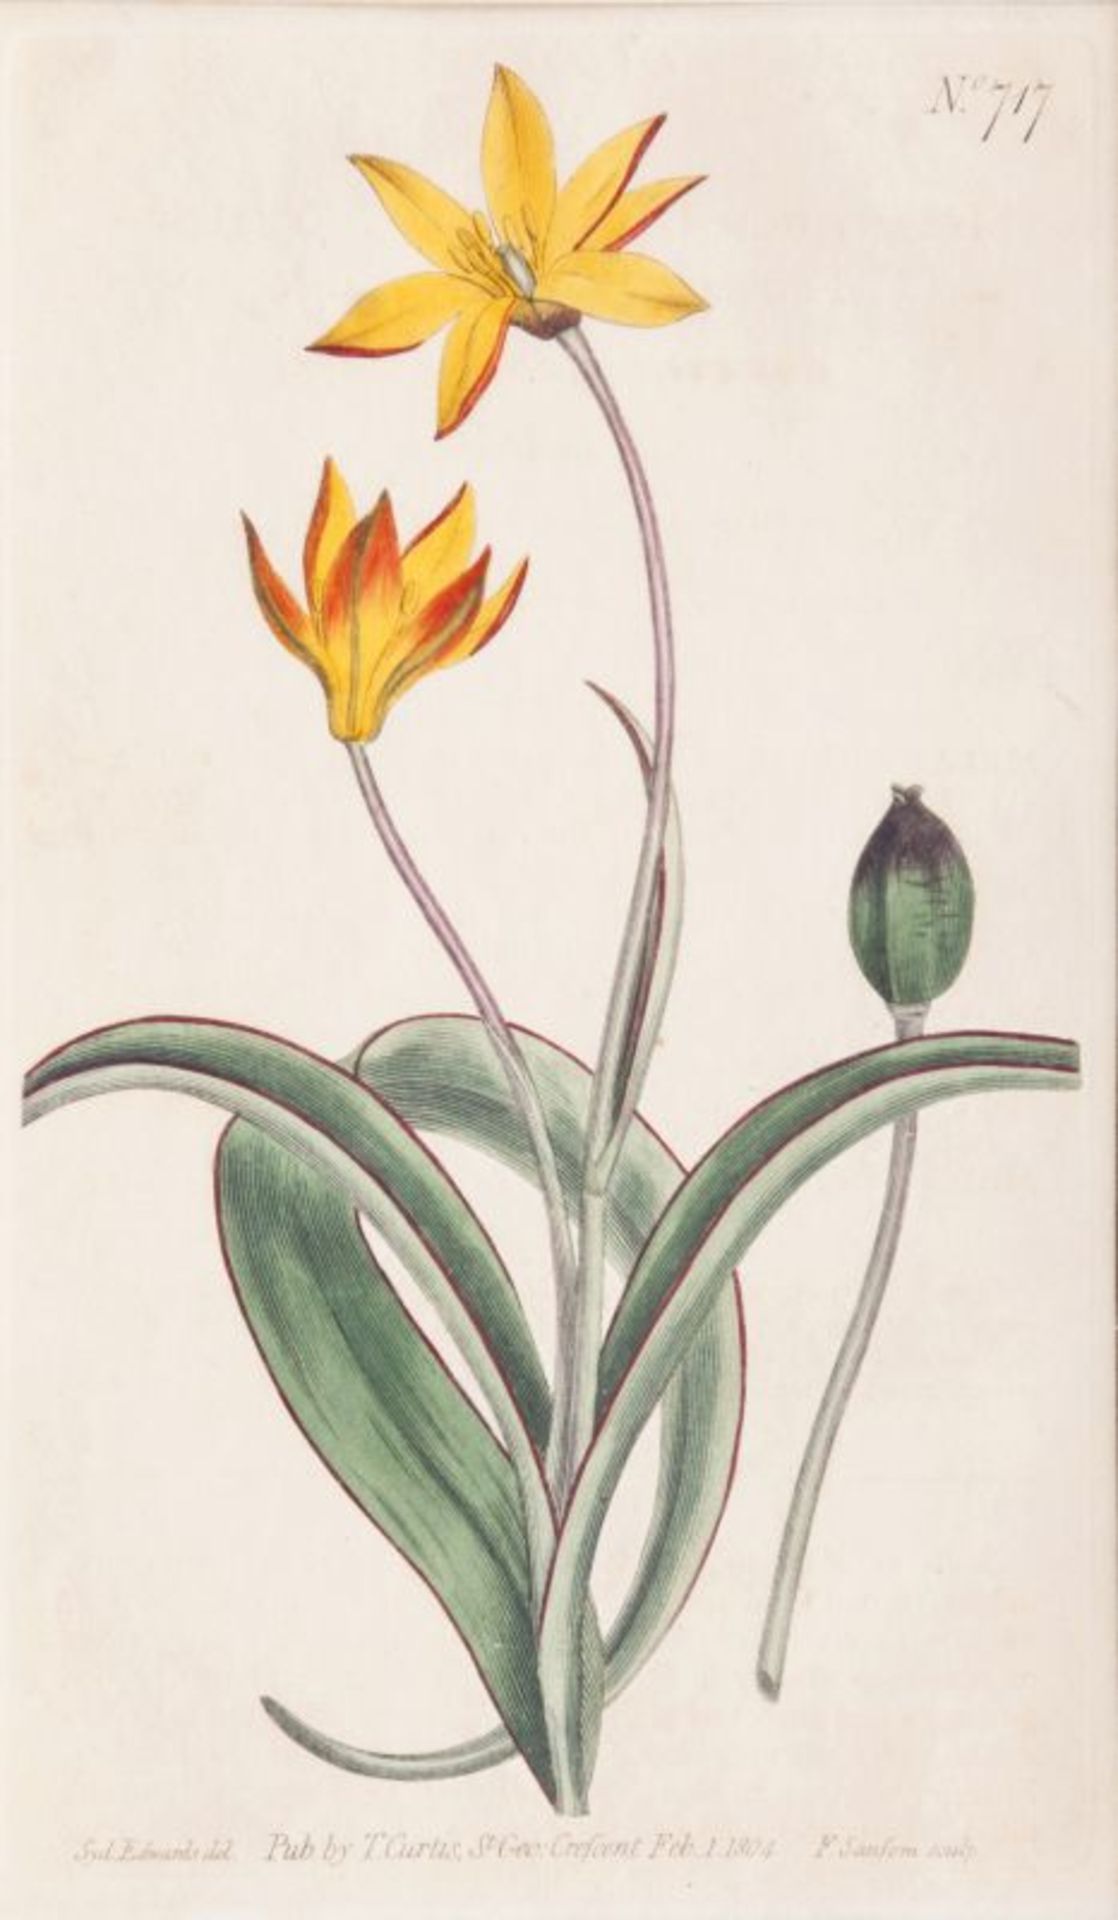 Francis Sansom (London), tätig Ende 18. Jh. Drei botanische Blätter Kupferstiche, handkoloriert,